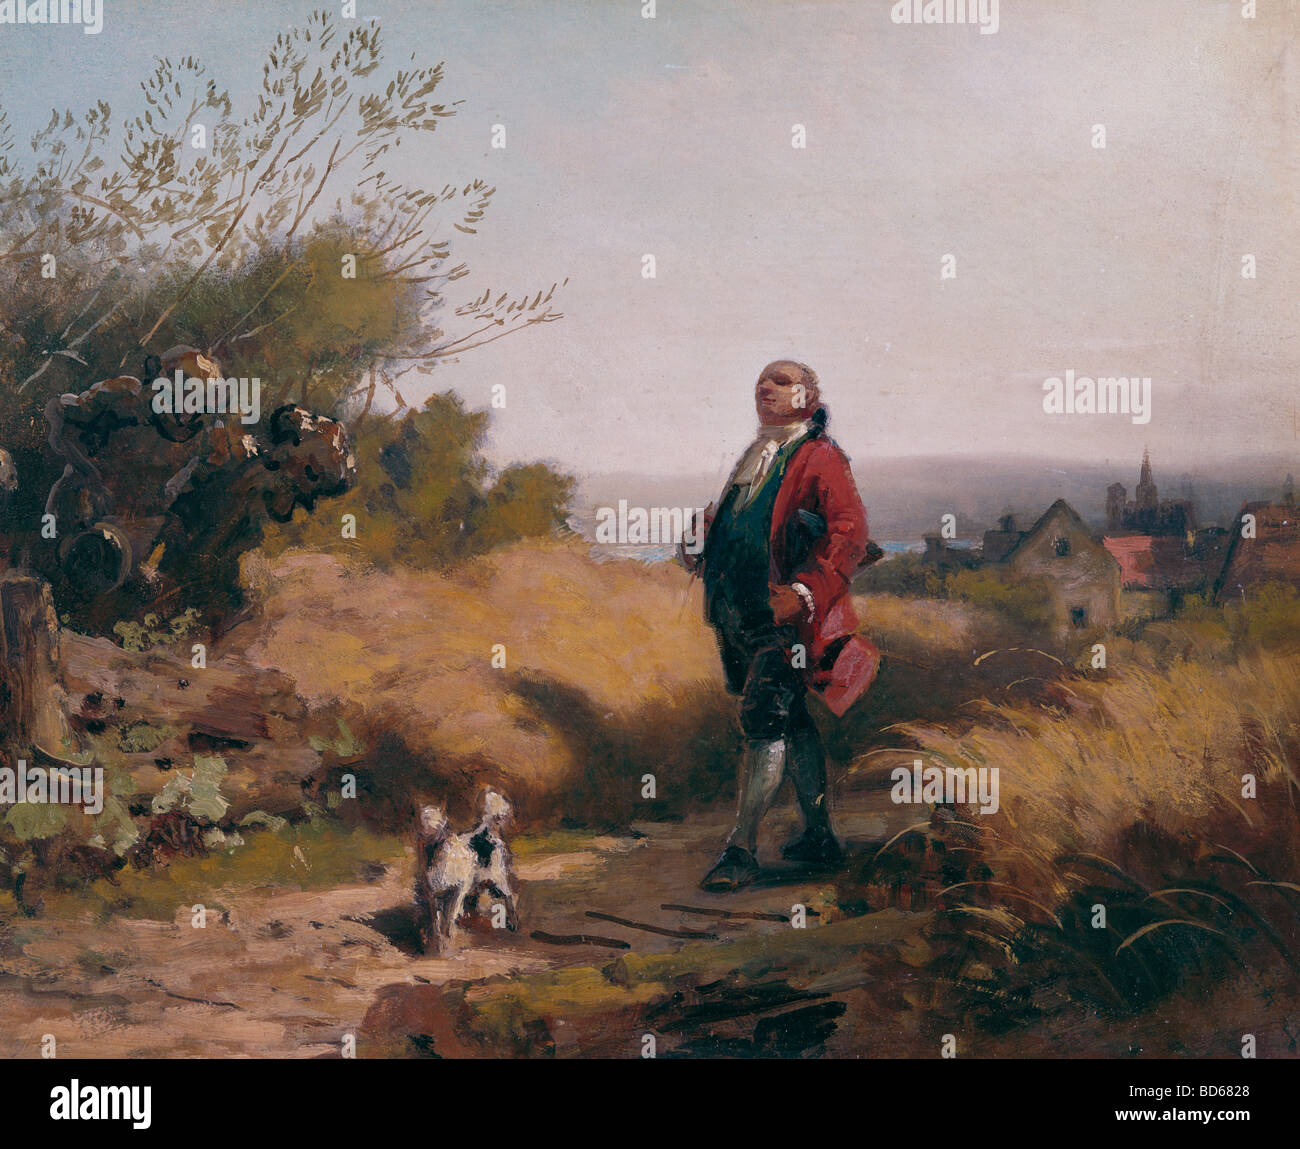 Bildende Kunst, Spitzweg, Carl (1808 – 1885), Malerei, "Der Gutsherr" (The Laird), Öl auf Holz, 24,5 cm x 31 cm, von der Heydt Mu Stockfoto